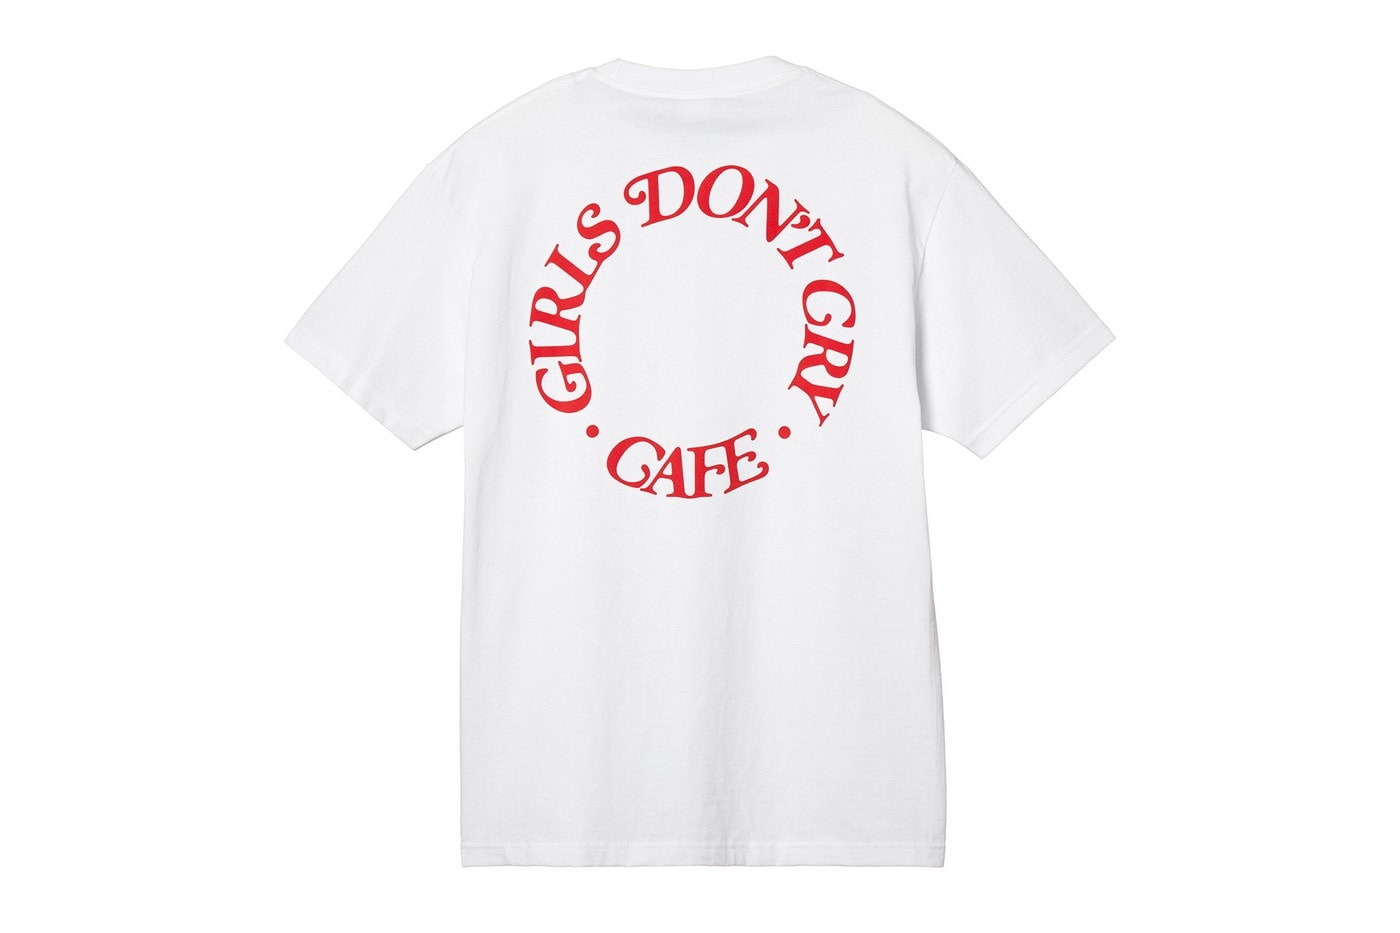 ガールズドントクライカフェ Girls Don't Cry Cafe アマゾン Amazon Fashion ブランドストア Brand Store Tシャツ パーカ マグカップ 